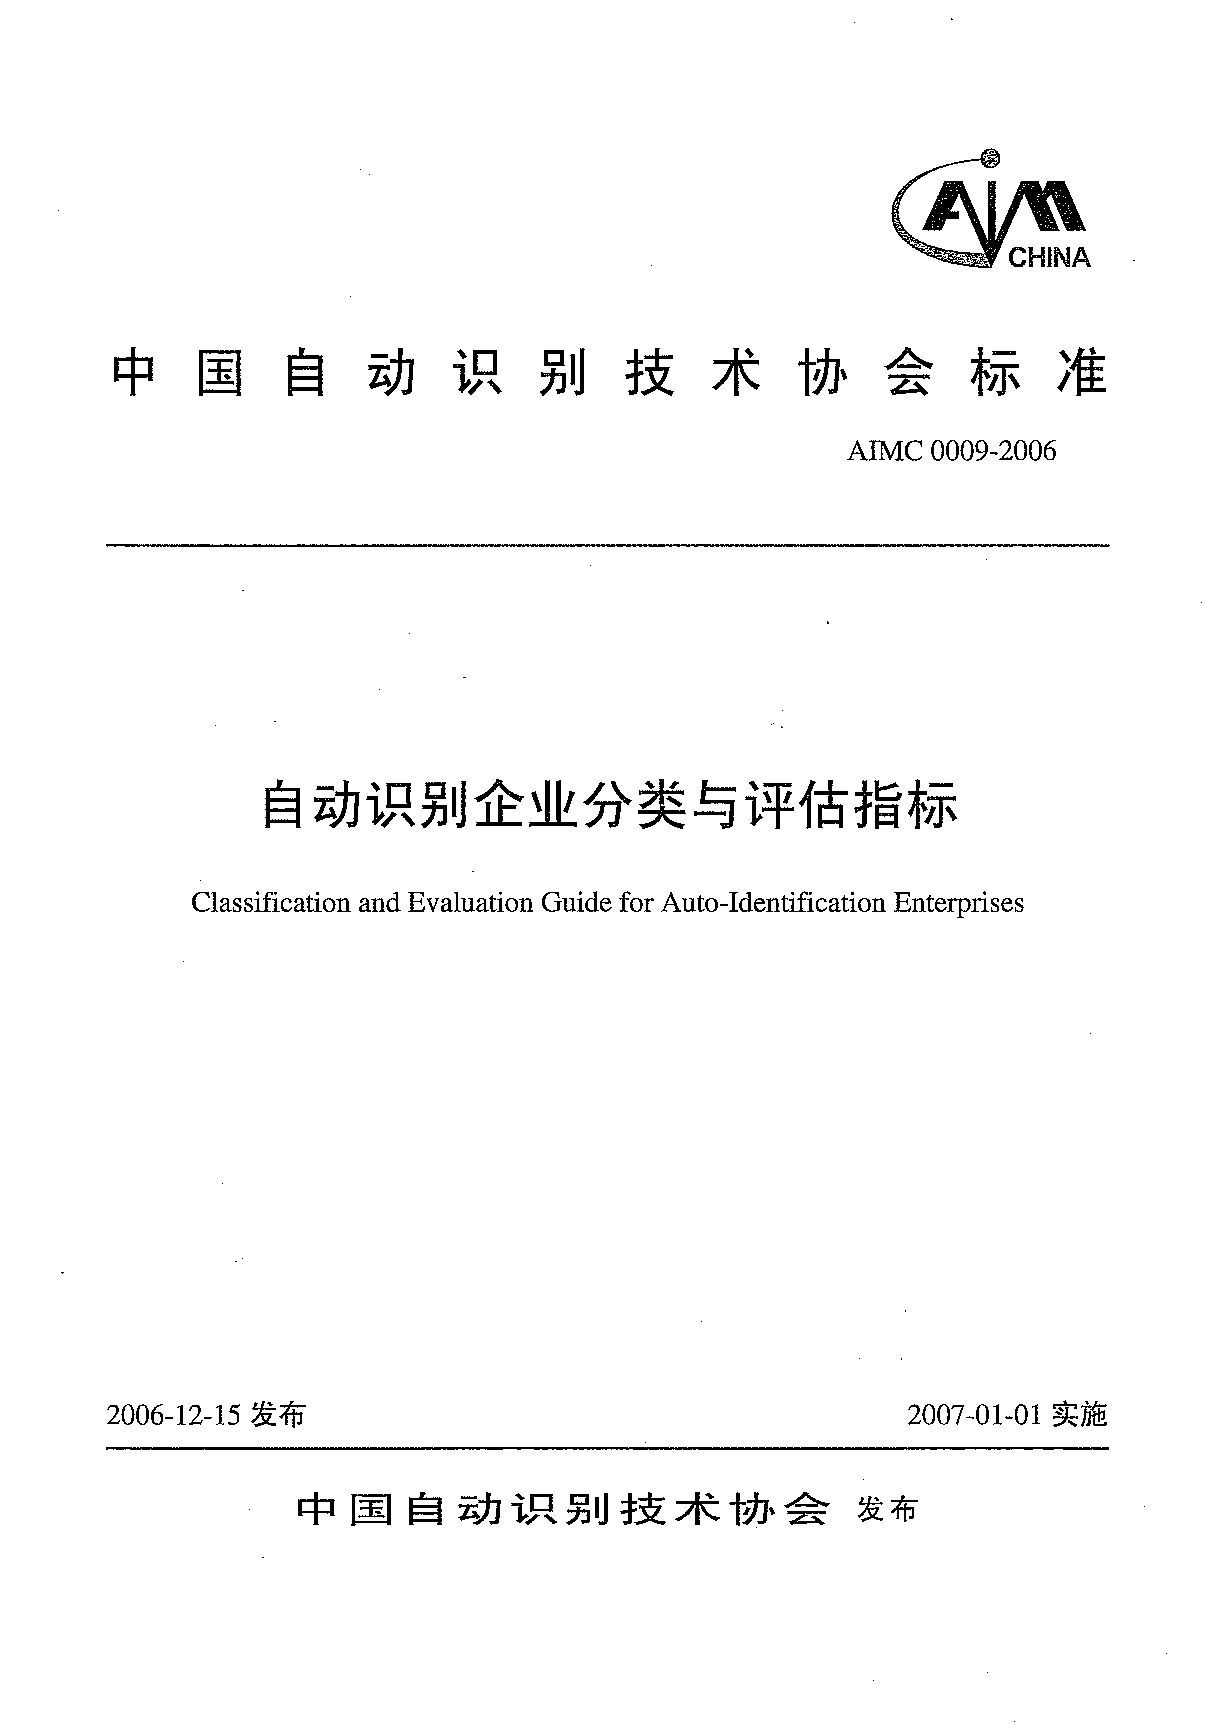 AIMC 0009-2006封面图